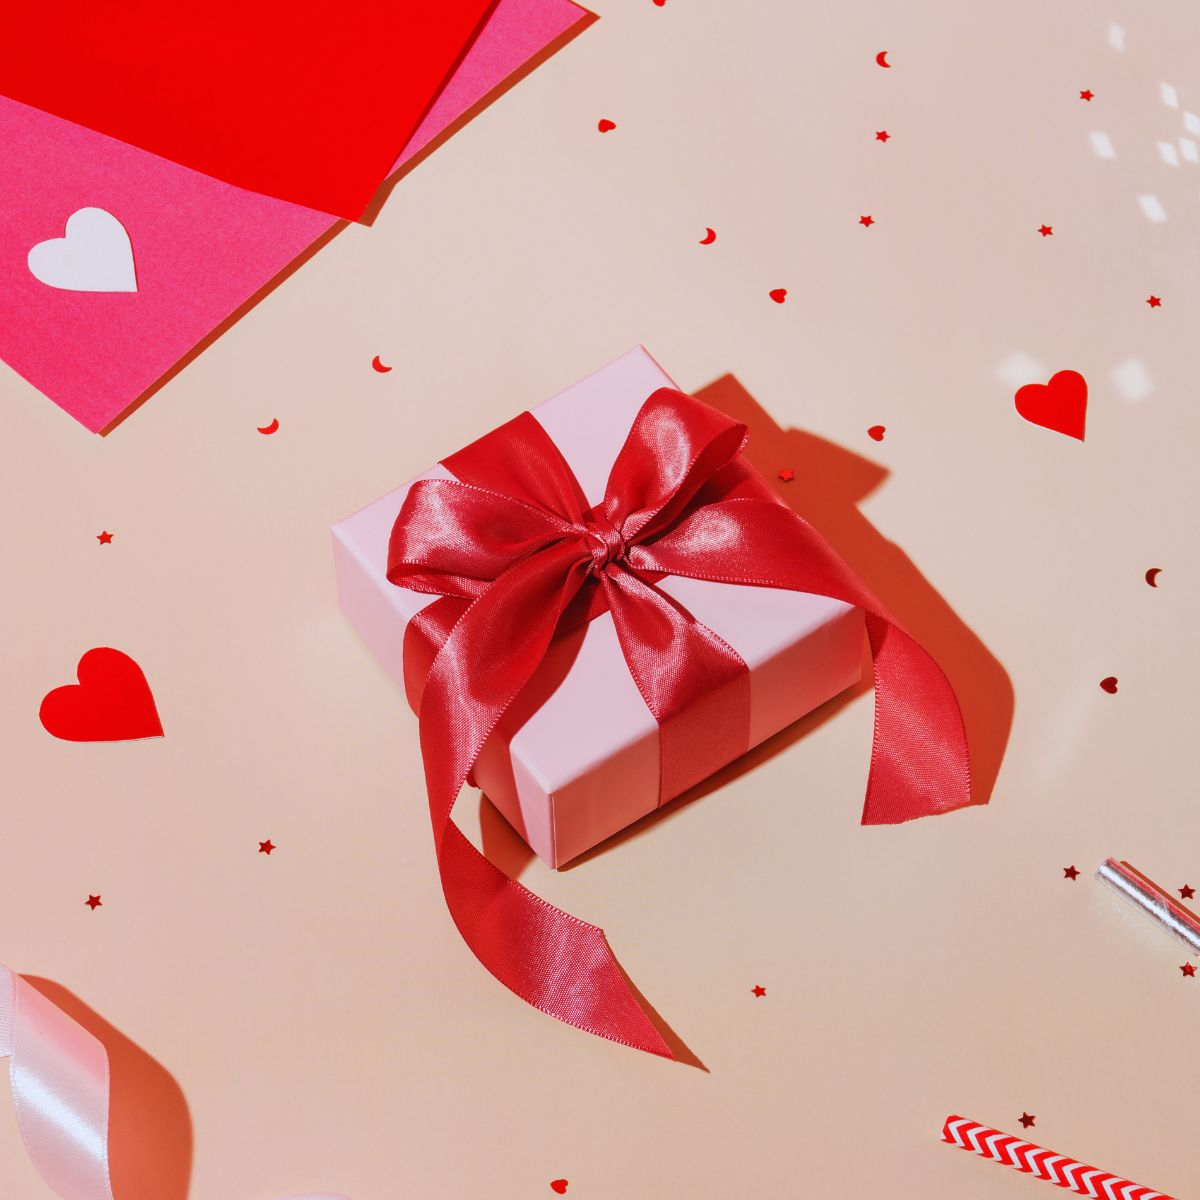 Вземете подаръците за Свети Валентин, които наистина искате, като изпратите тези връзки на вашите значими други лица